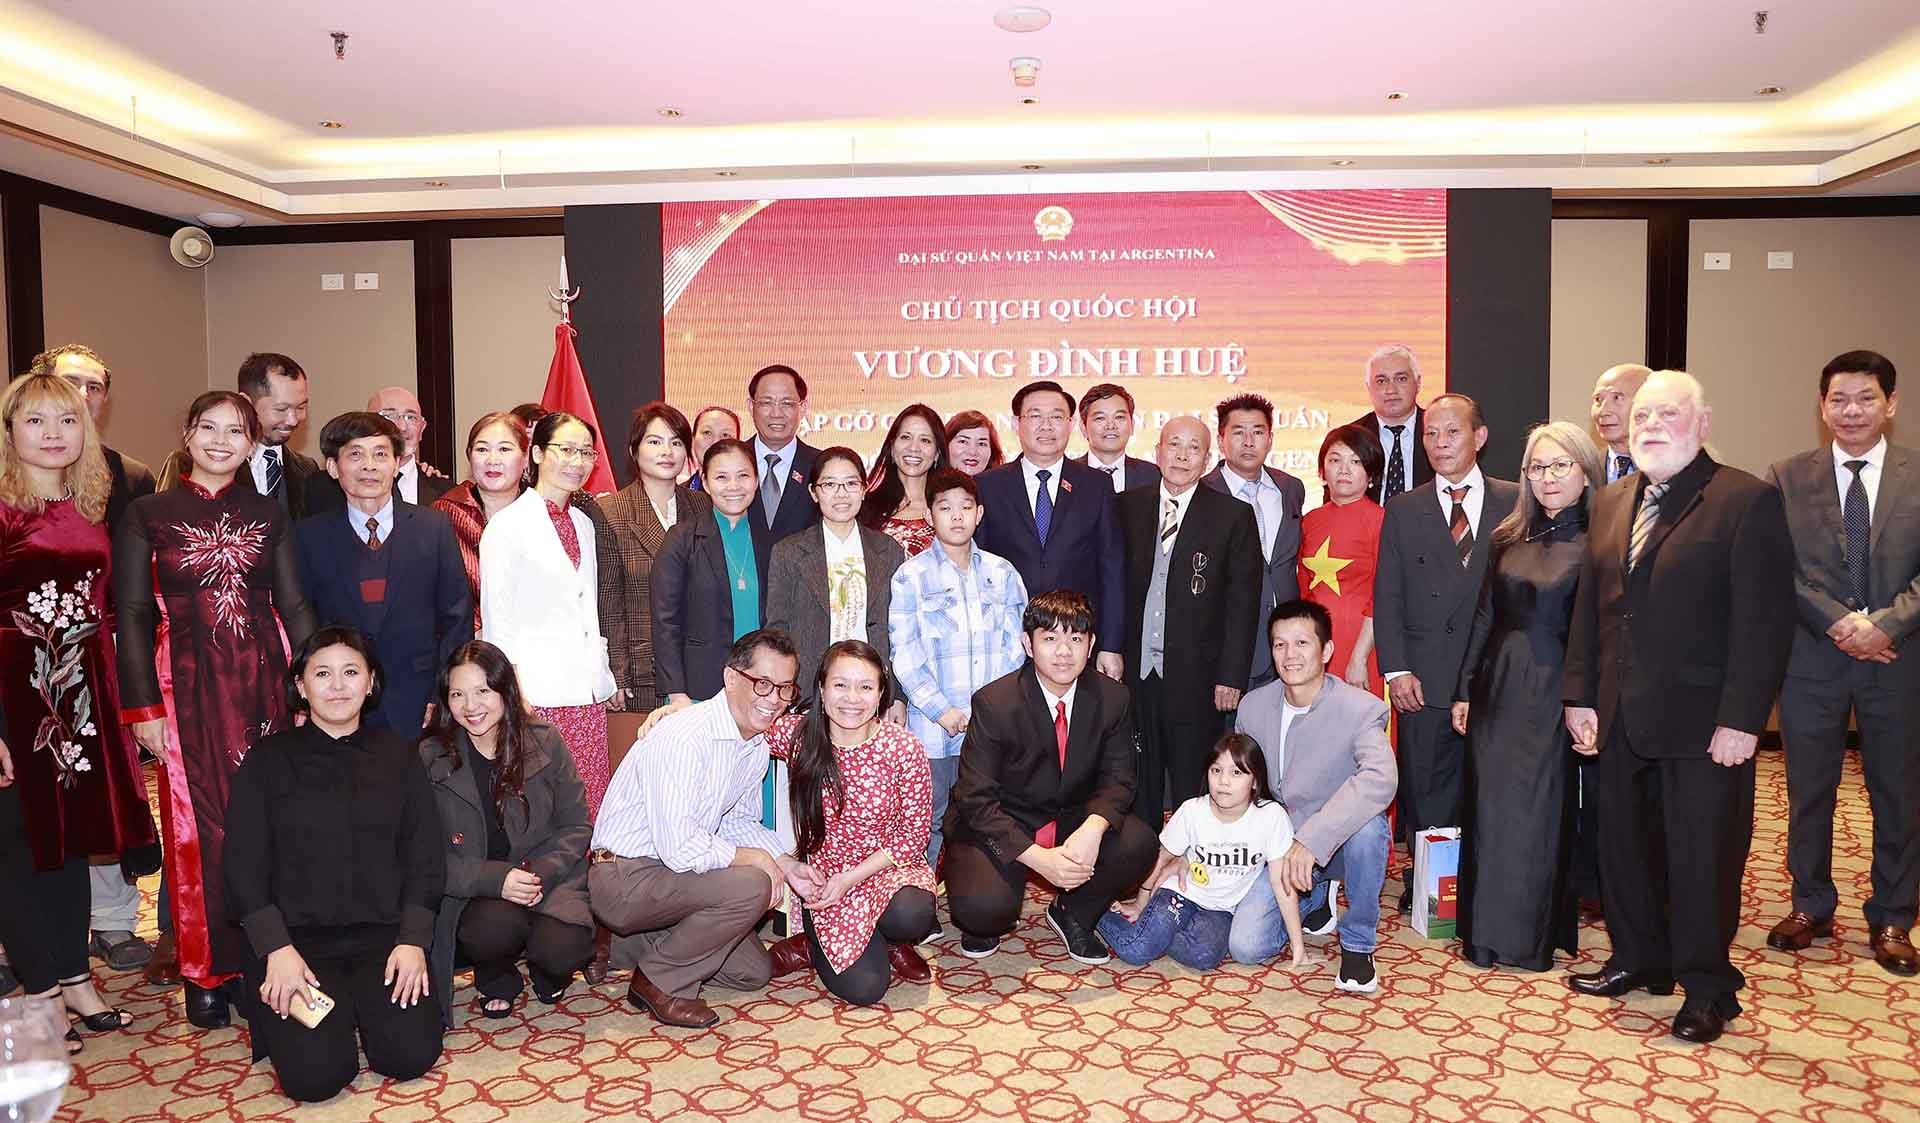 Chủ tịch Quốc hội gặp mặt cán bộ, nhân viên Đại sứ quán và cộng đồng người Việt Nam tại Argentina